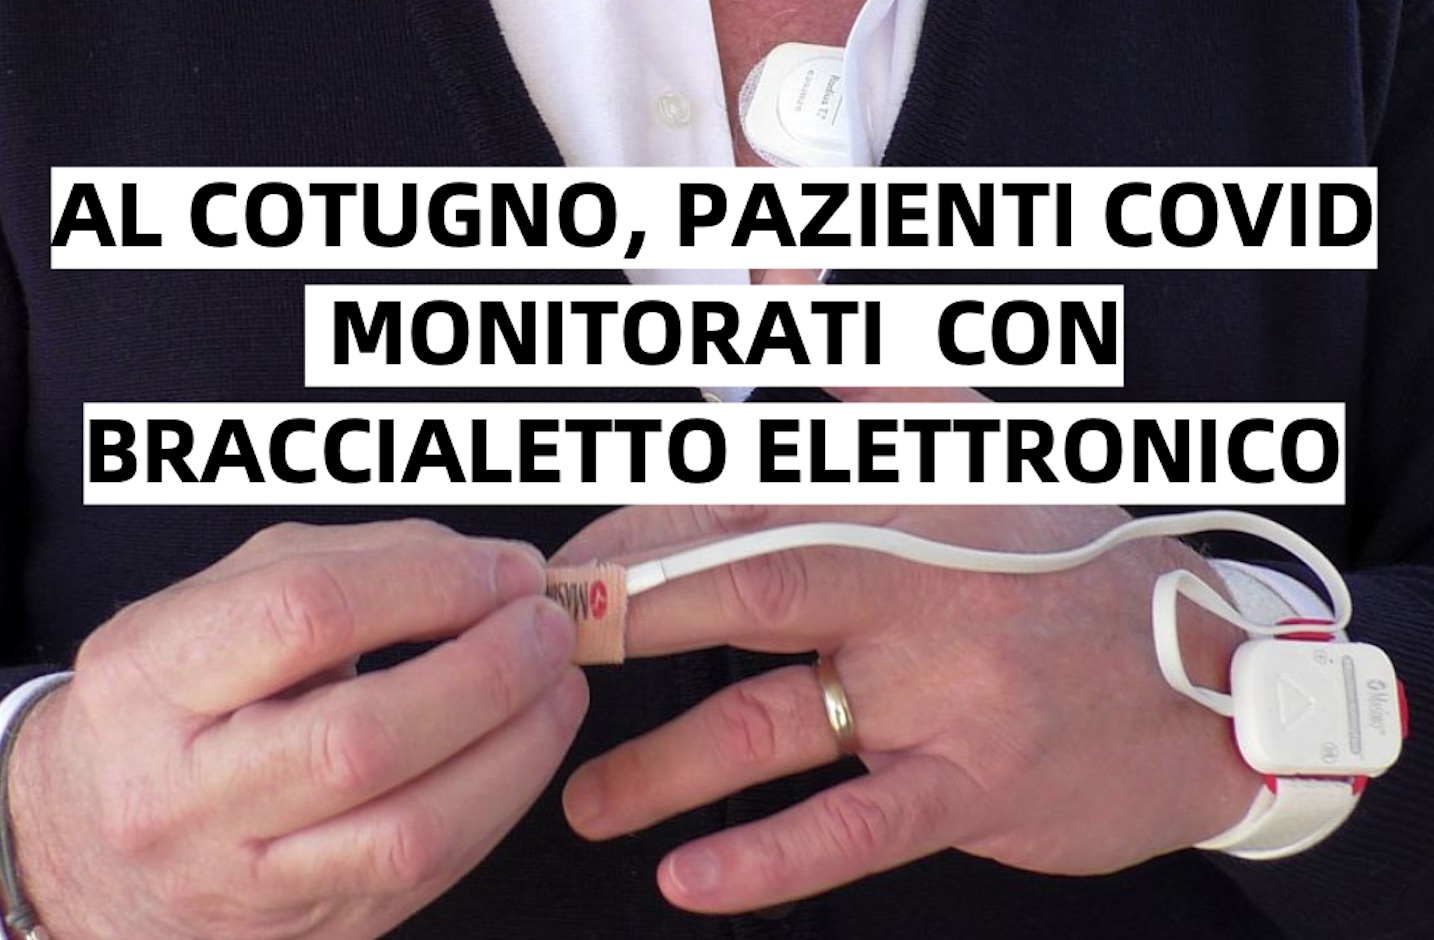 Napoli, al Cotugno pazienti covid monitorati con bracciale elettronico